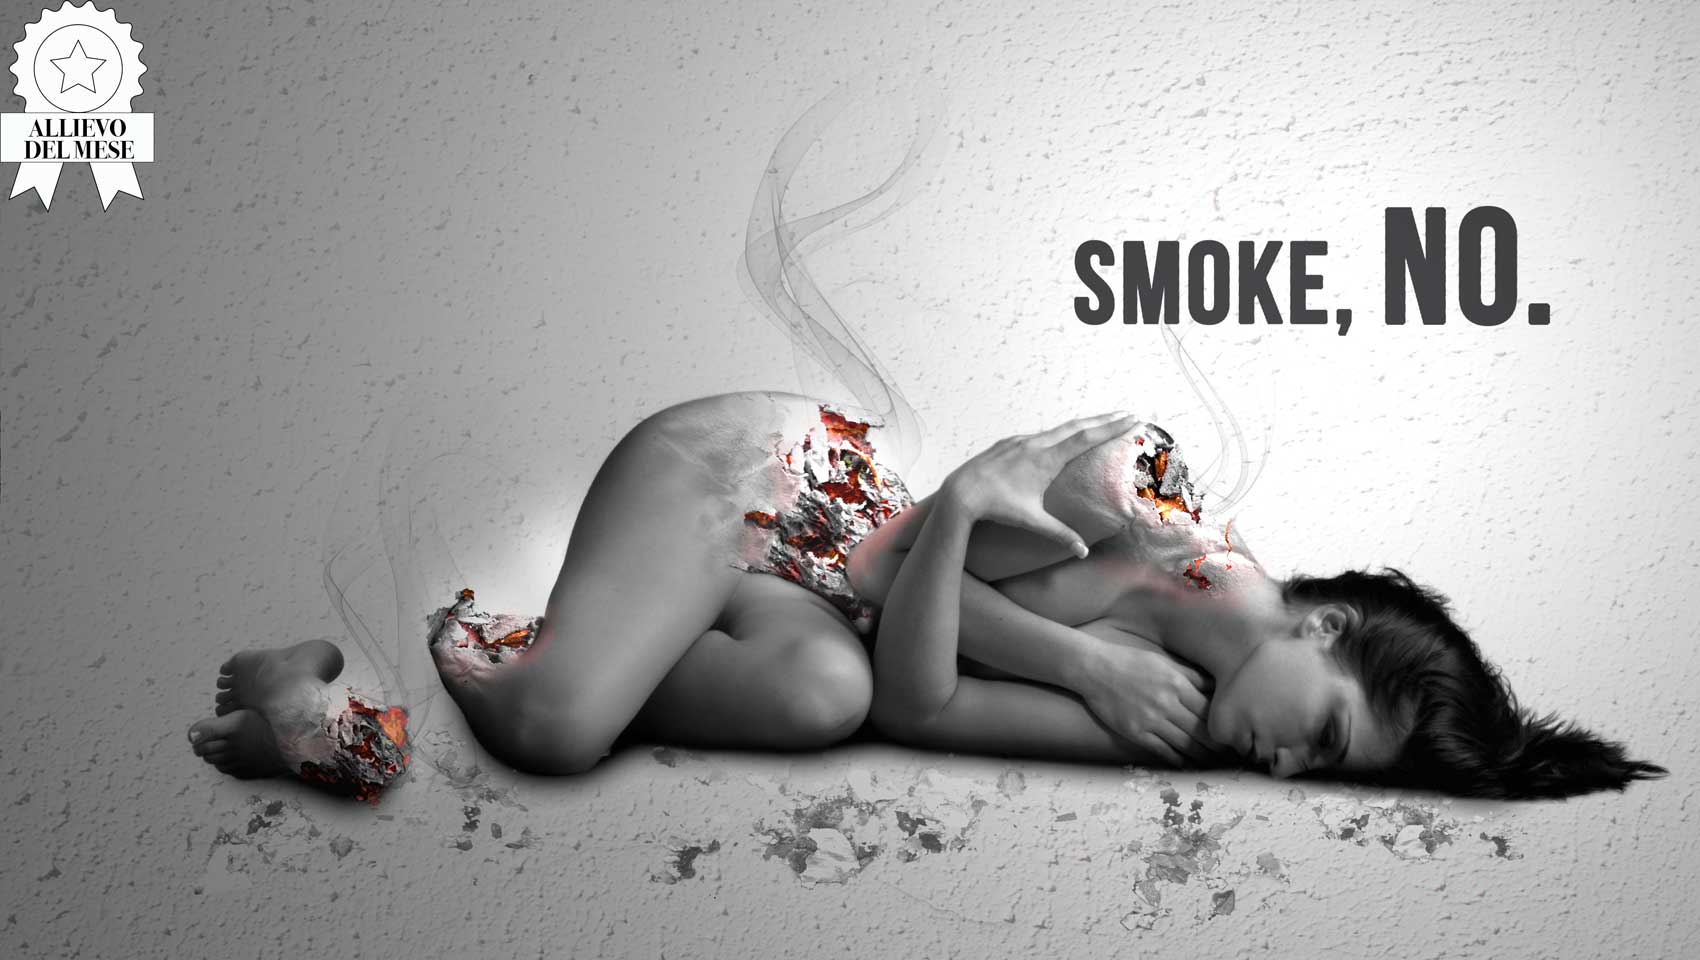 no_smoke-allievo-delmese